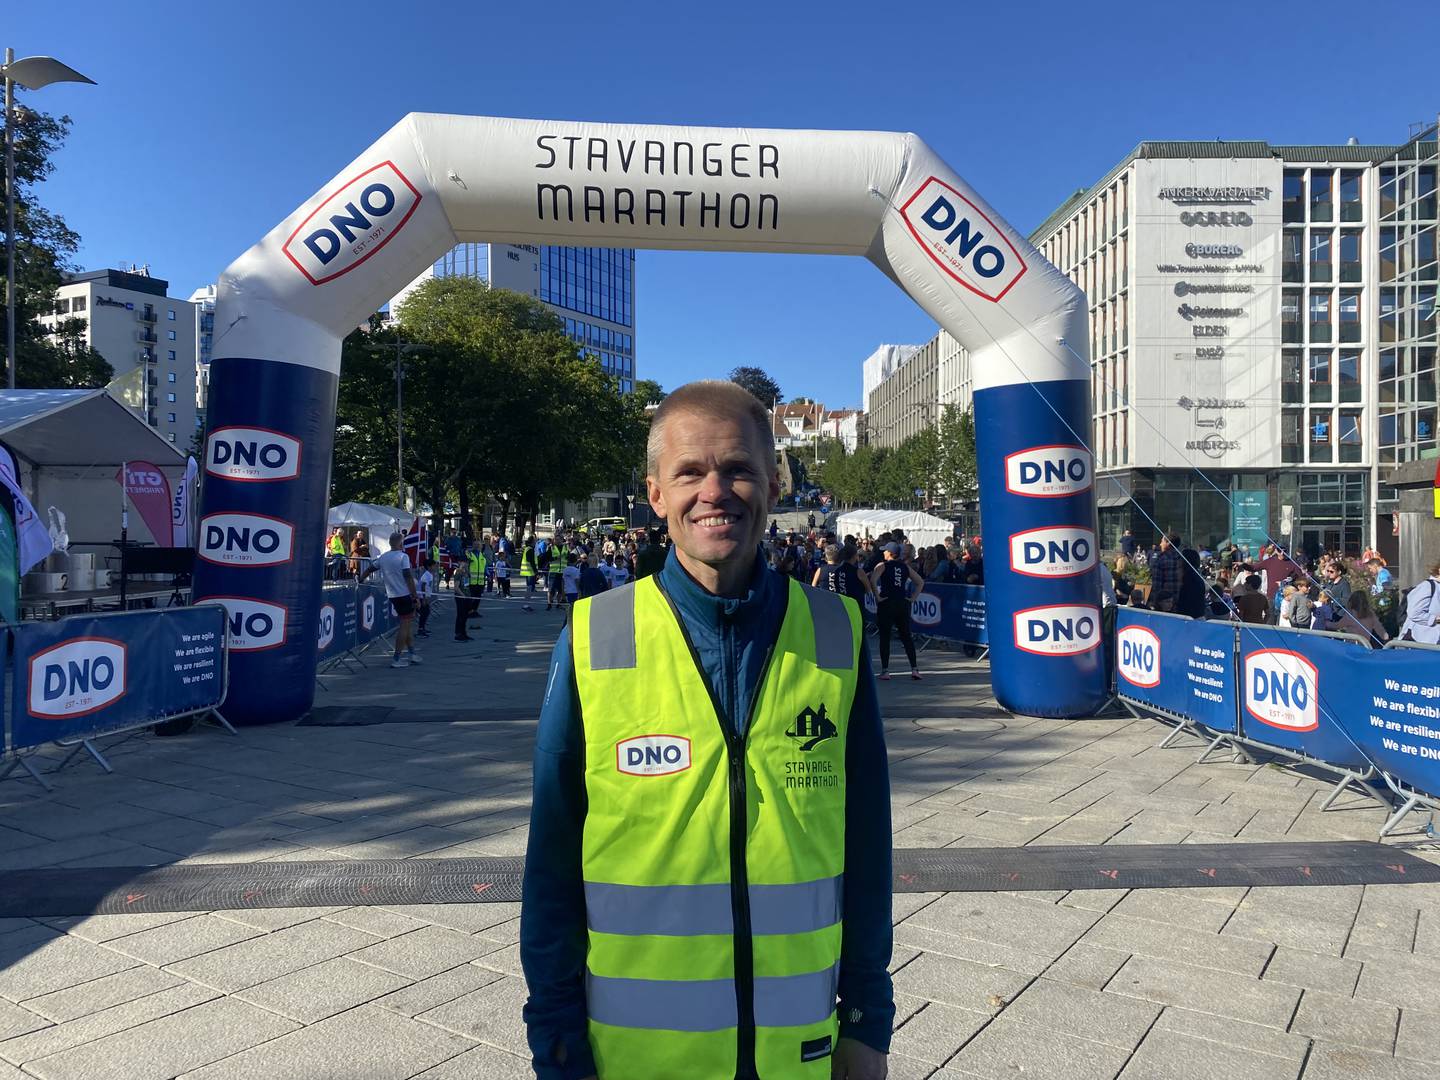 Stavanger maraton Johannes Økland